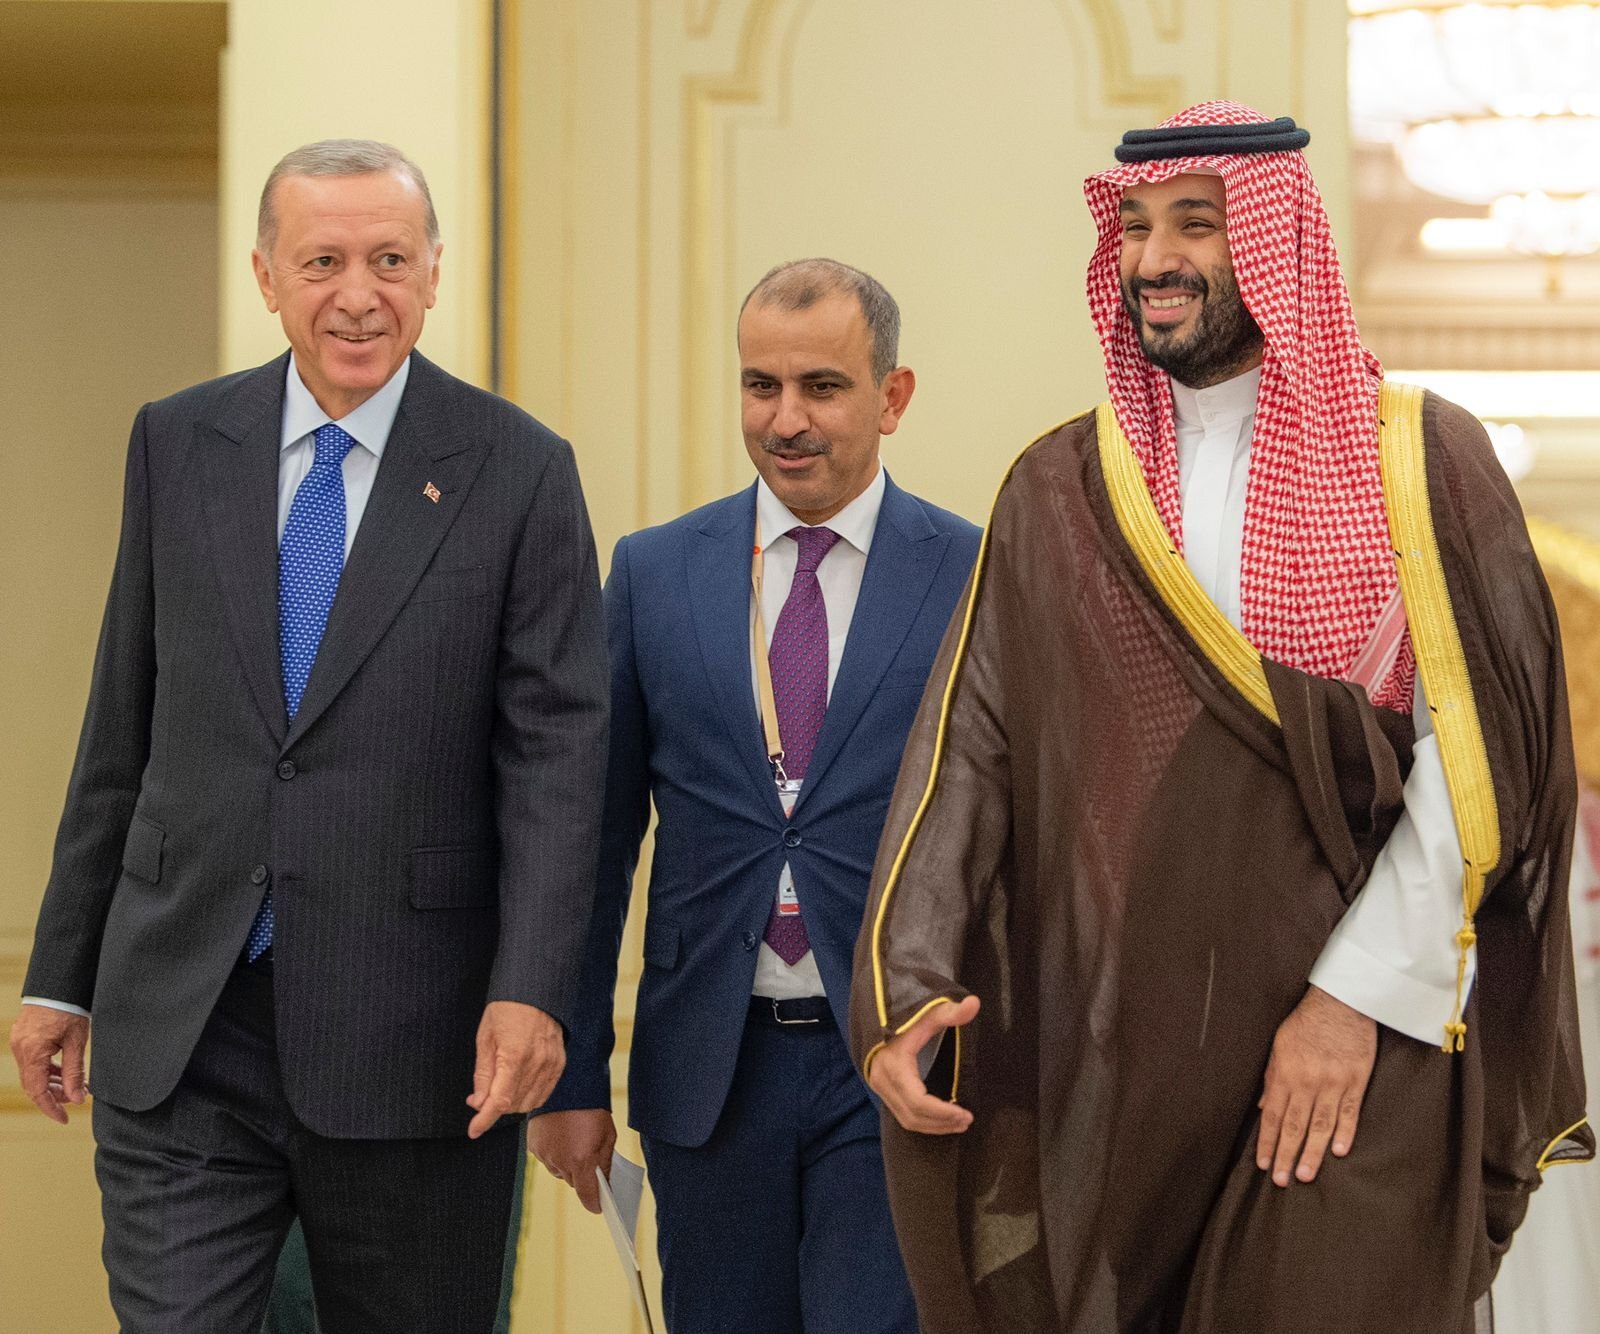 سفر اردوغان به عربستان سعودی   و استقبال محمد بن سلمان ولیعهد از او - قصر السلام در جده